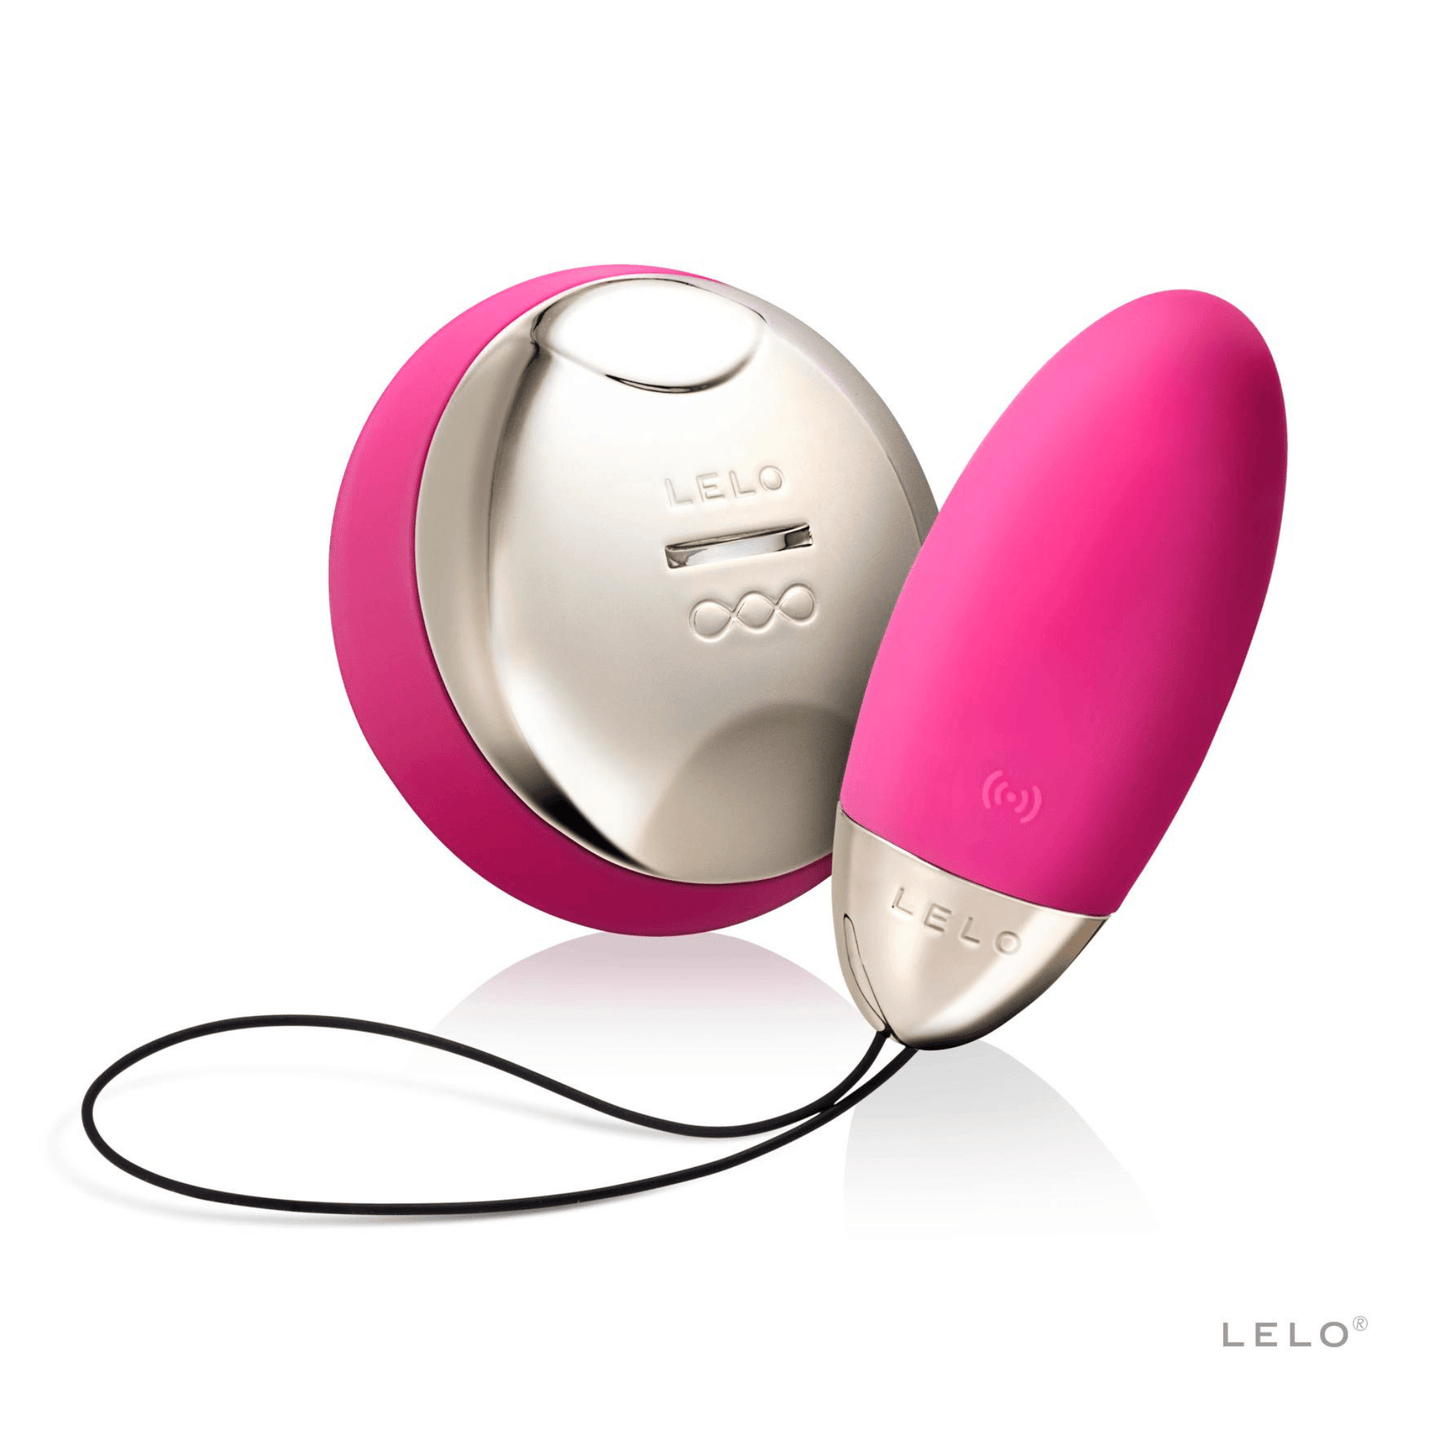 Oeuf vibrant Lyla 2 en rose avec télécommande dorée SenseMotion de Lelo, offrant un contrôle intuitif pour des plaisirs discrets, disponible chez OhMyGodz.fr. Sextoy premium pour des jeux de couple raffinés.